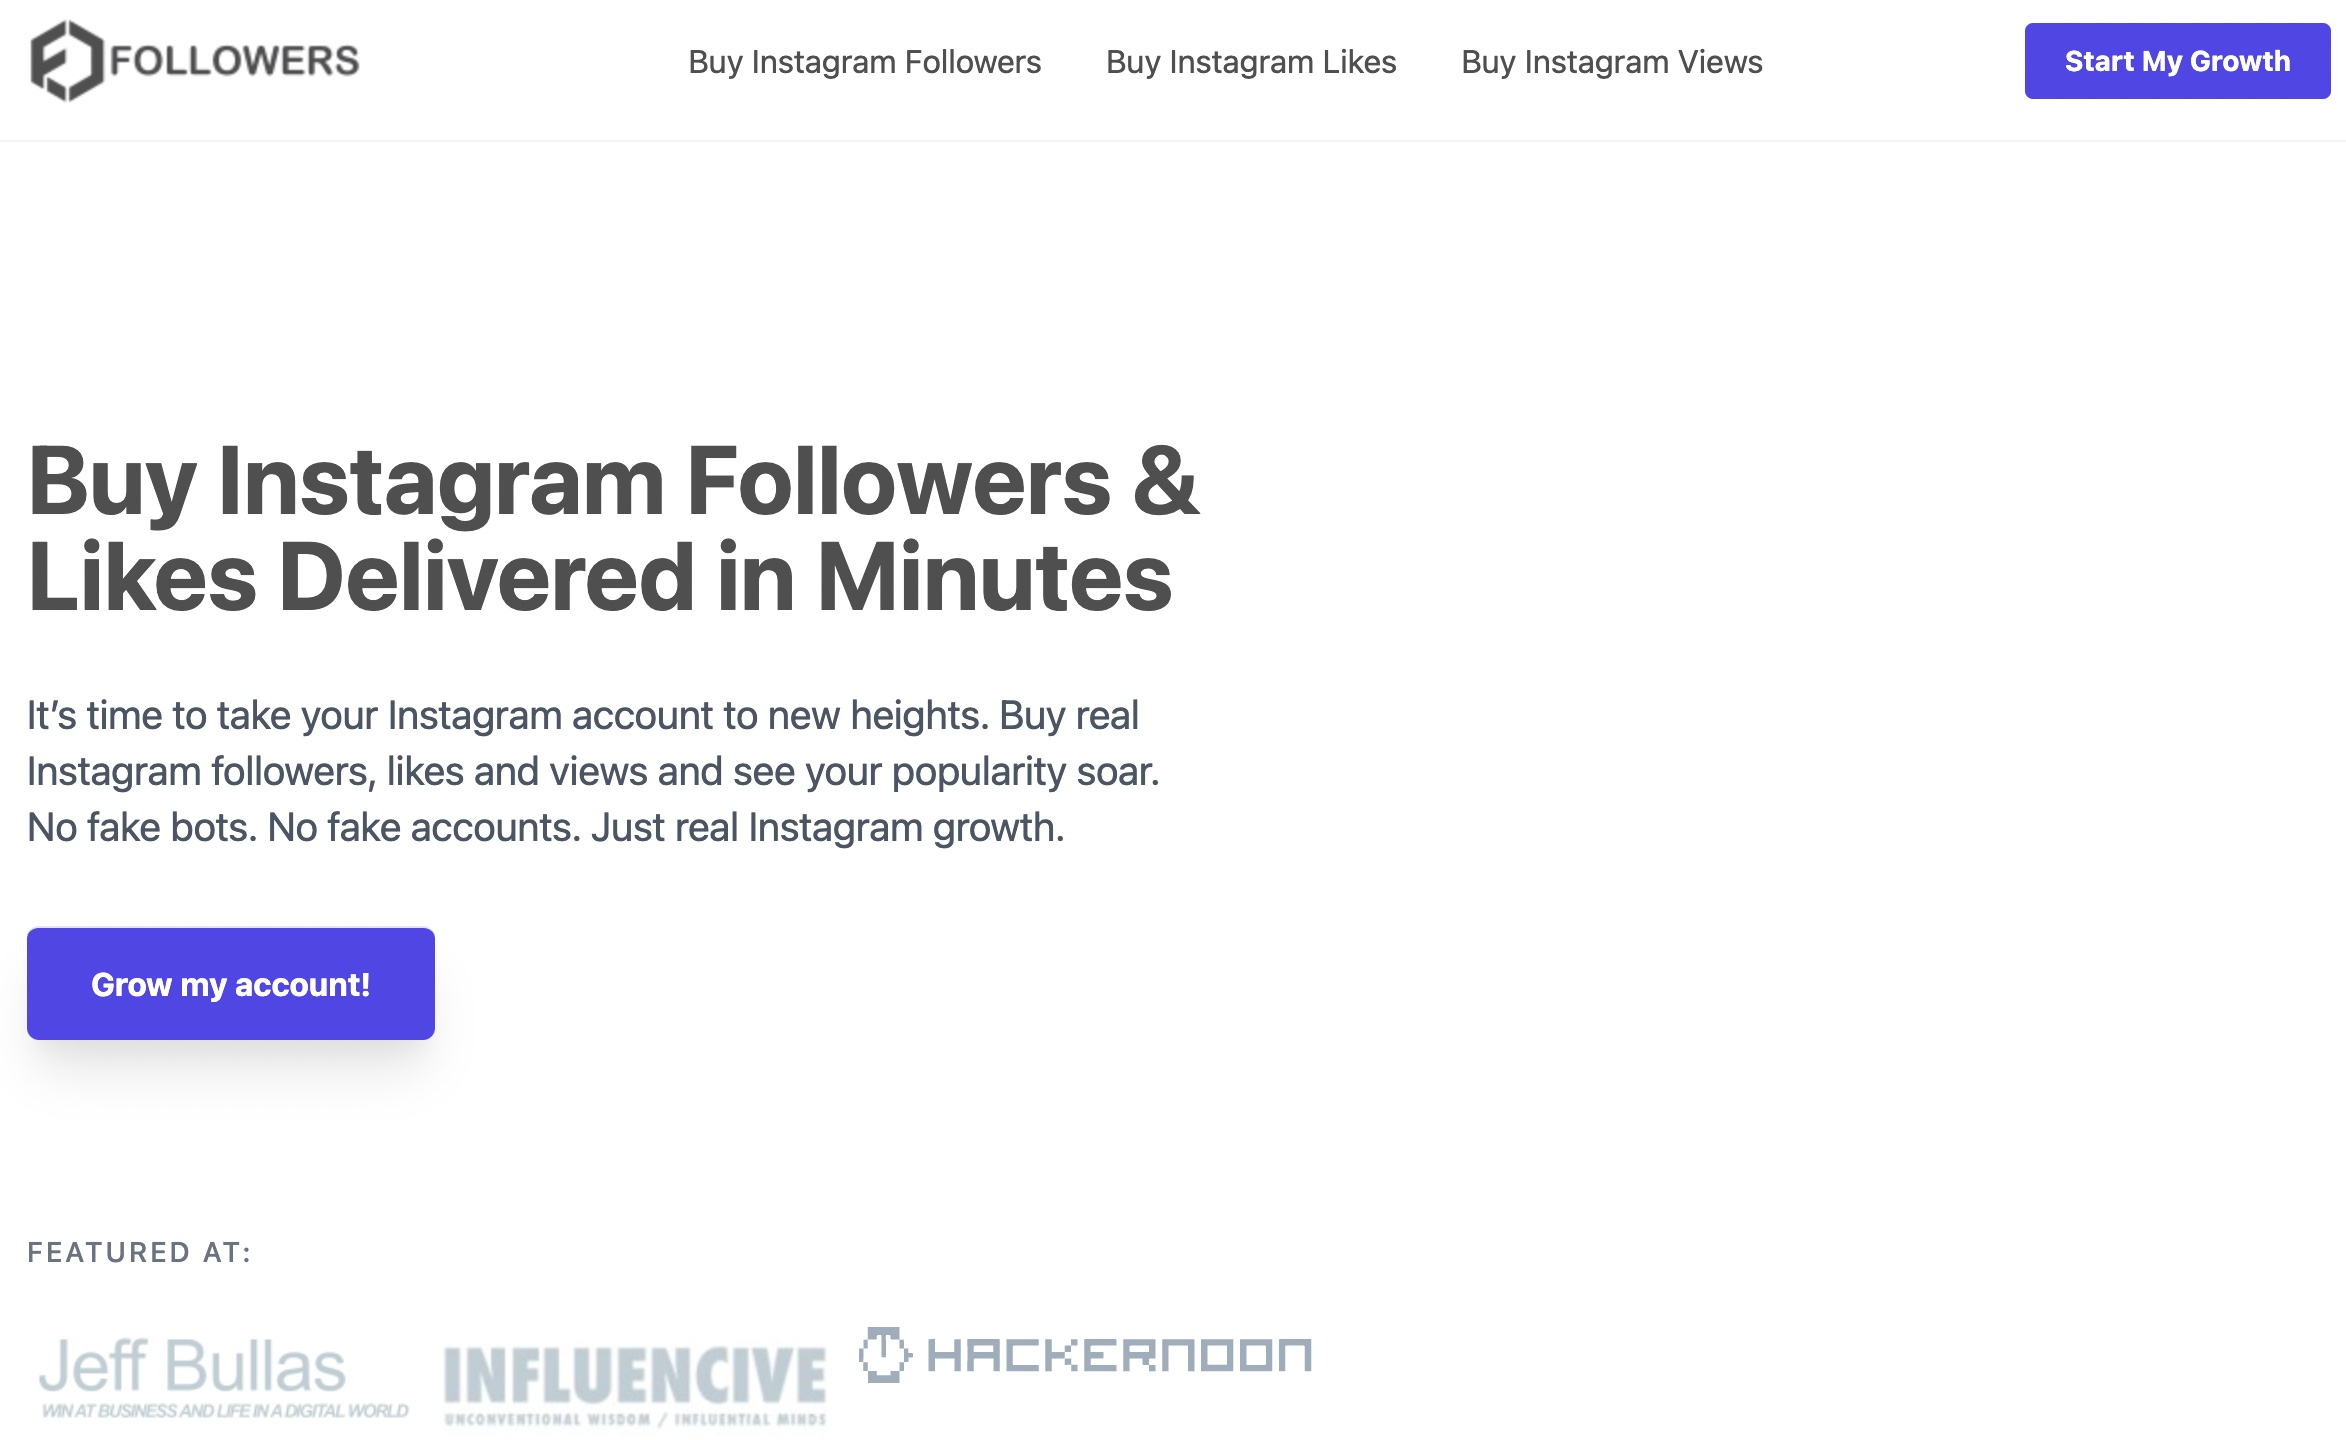 followers.io sponsored by Likes.io 